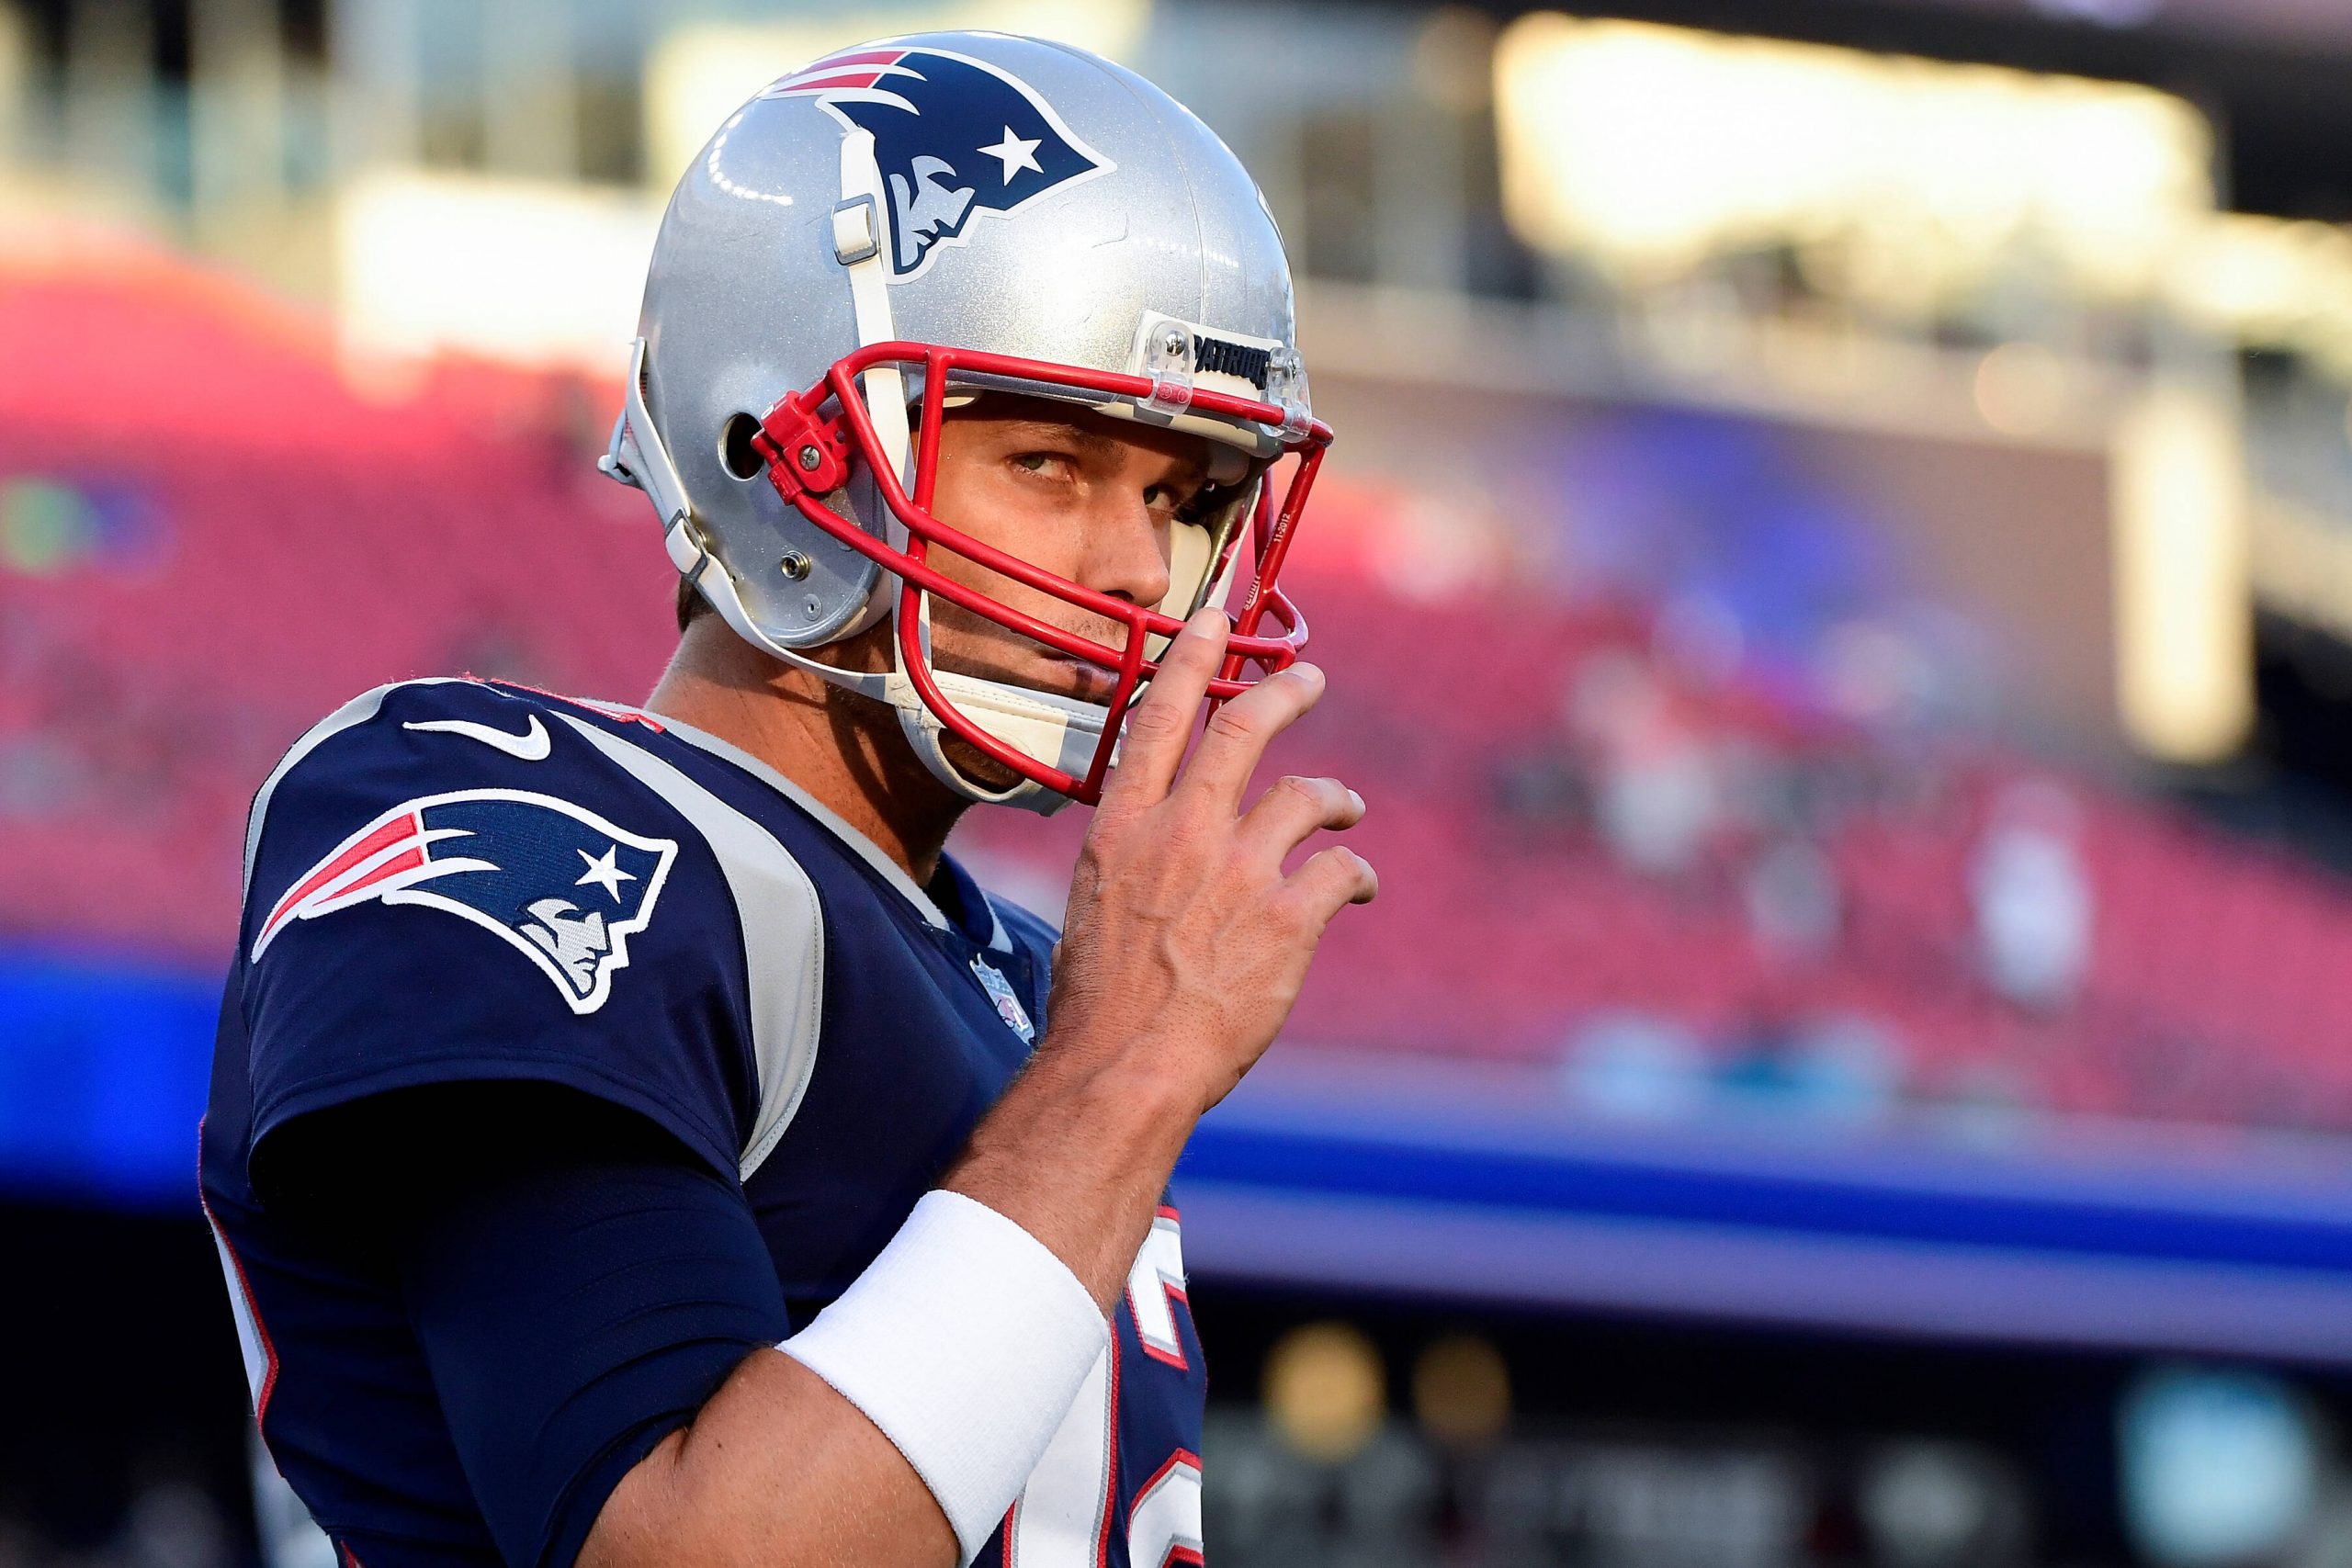 Patriots feiern Tom Brady - Ticketpreise explodieren. 807 Dollar